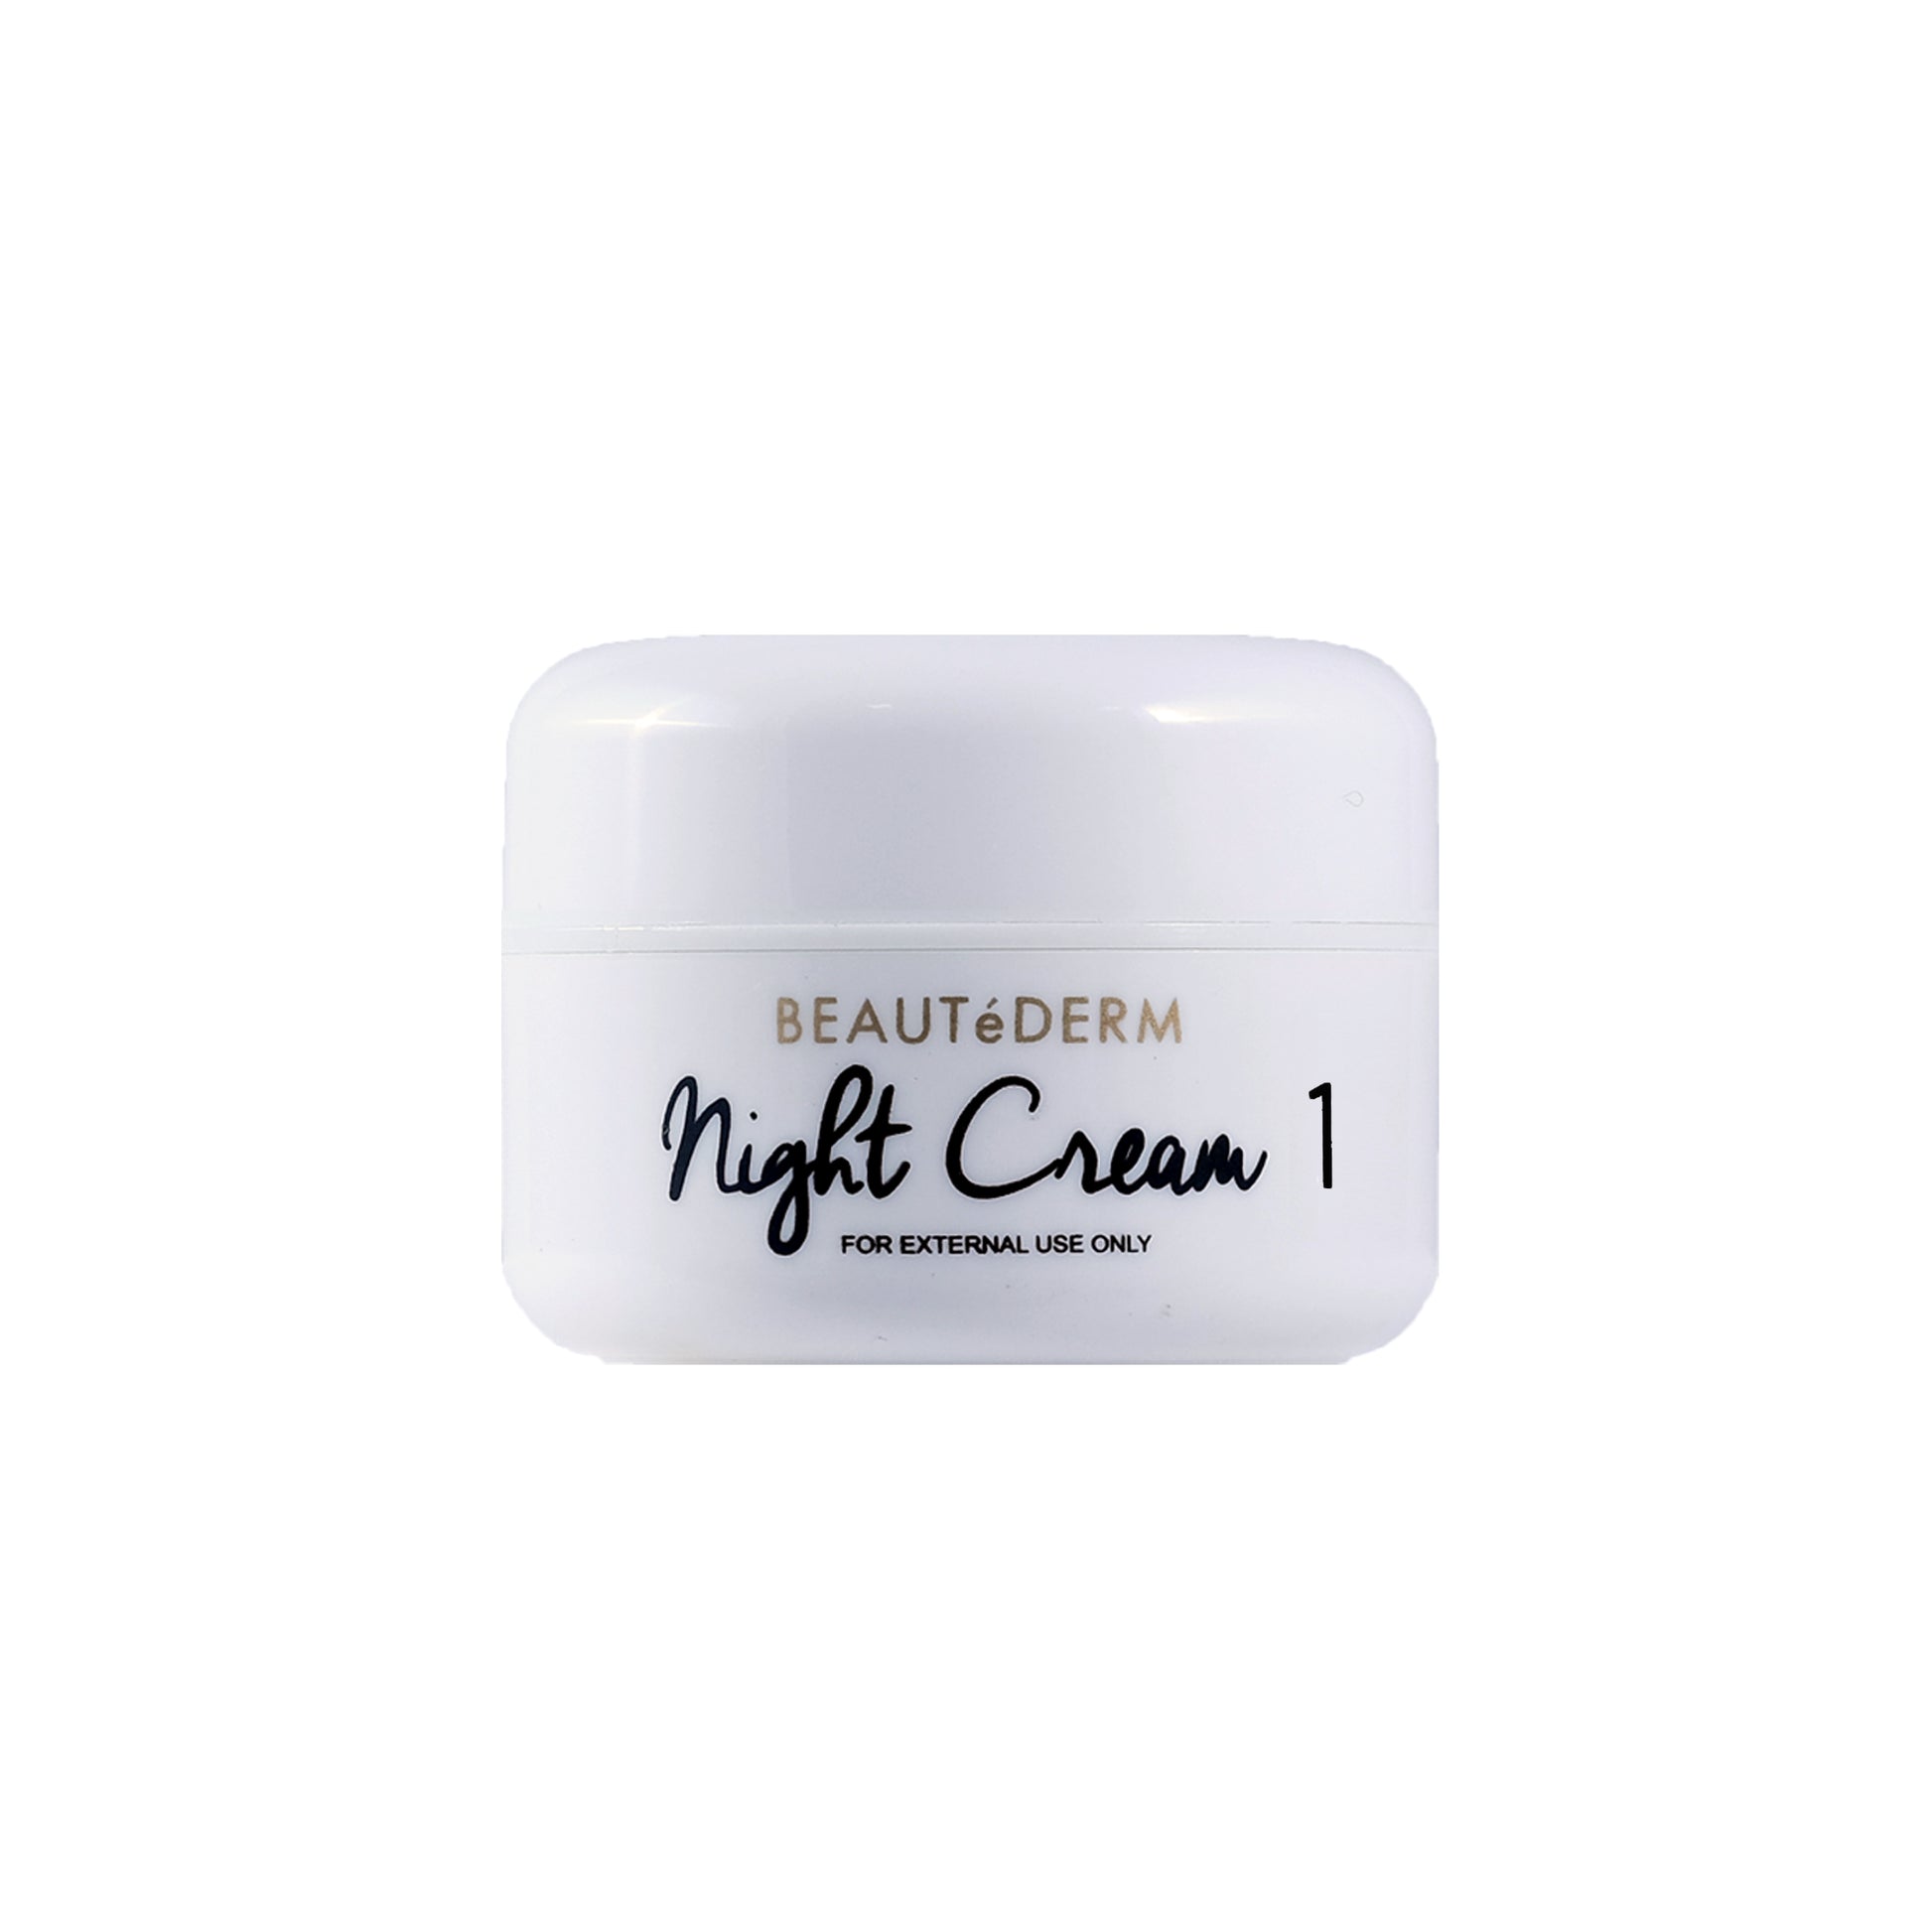 Beautederm Night Cream 1 20g Whitening